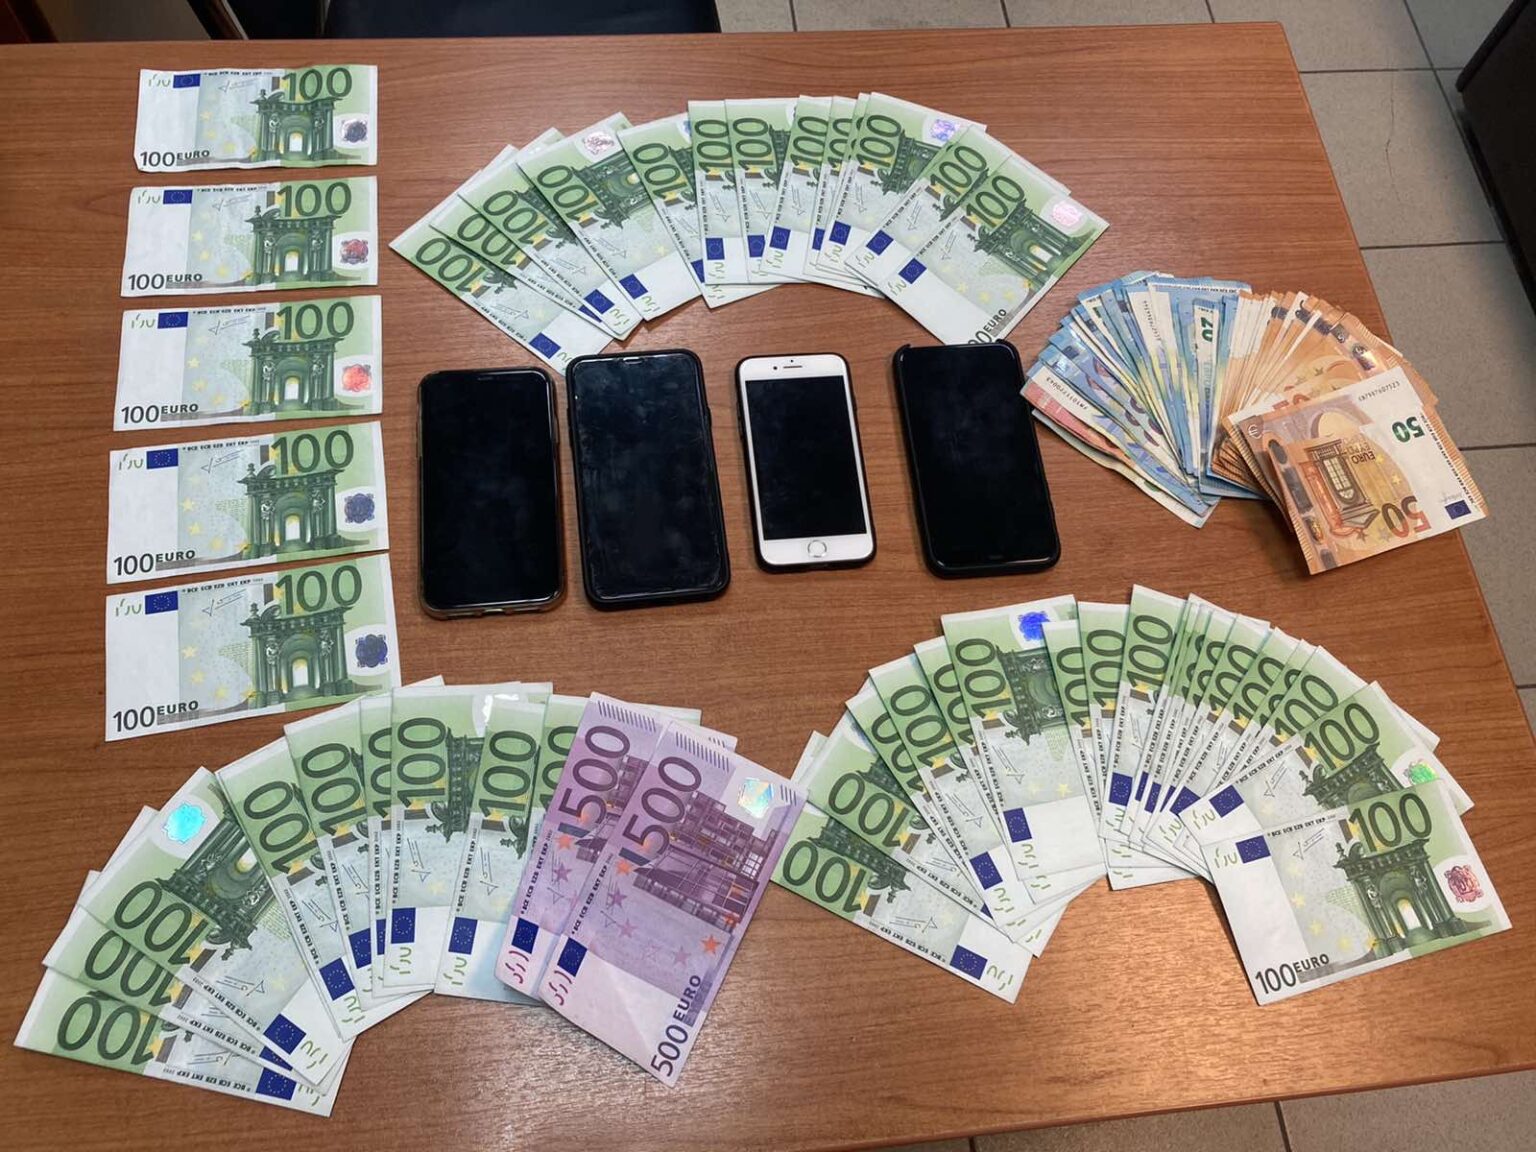 Συνελήφθησαν 4 άτομα για κυκλοφορία πλαστών χαρτονομισμάτων – Κατασχέθηκαν 50 πλαστά χαρτονομίσματα αξίας 5.800 ευρώ